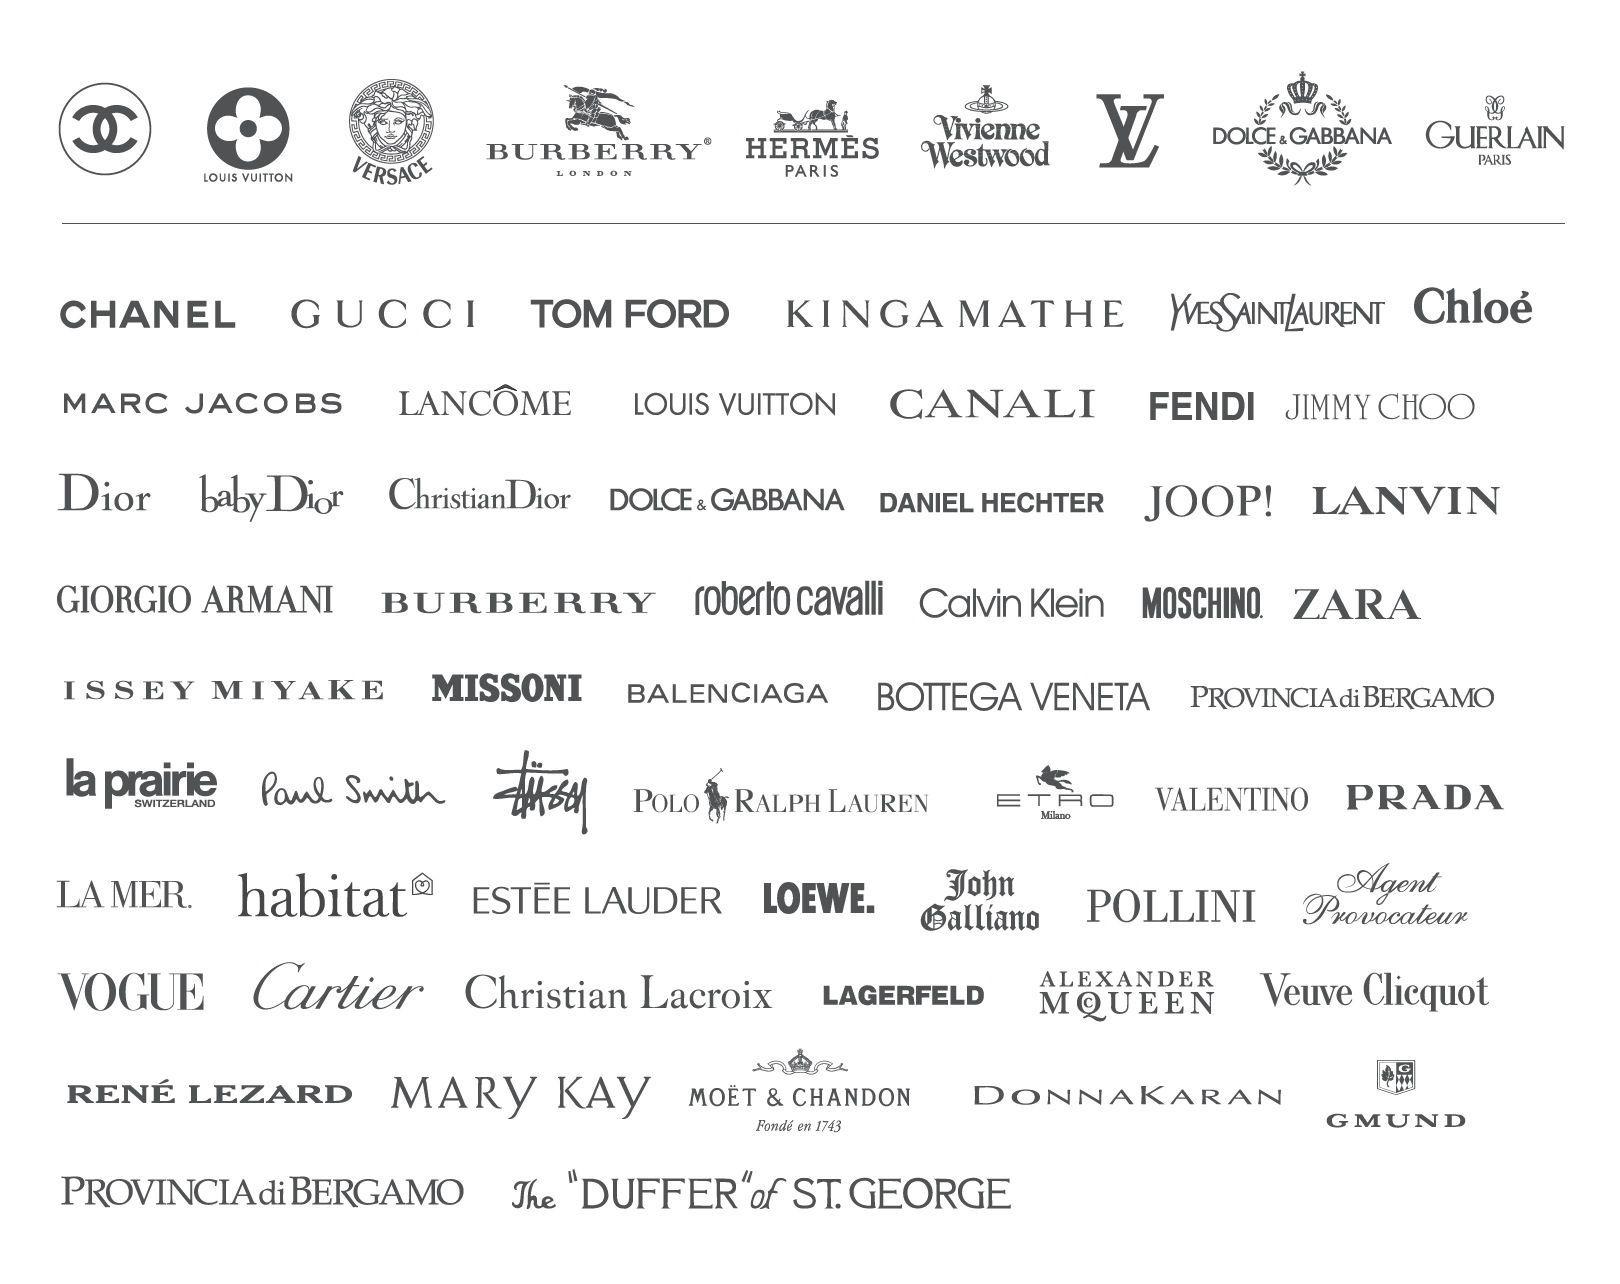 Luxury Fashion Brands [List]